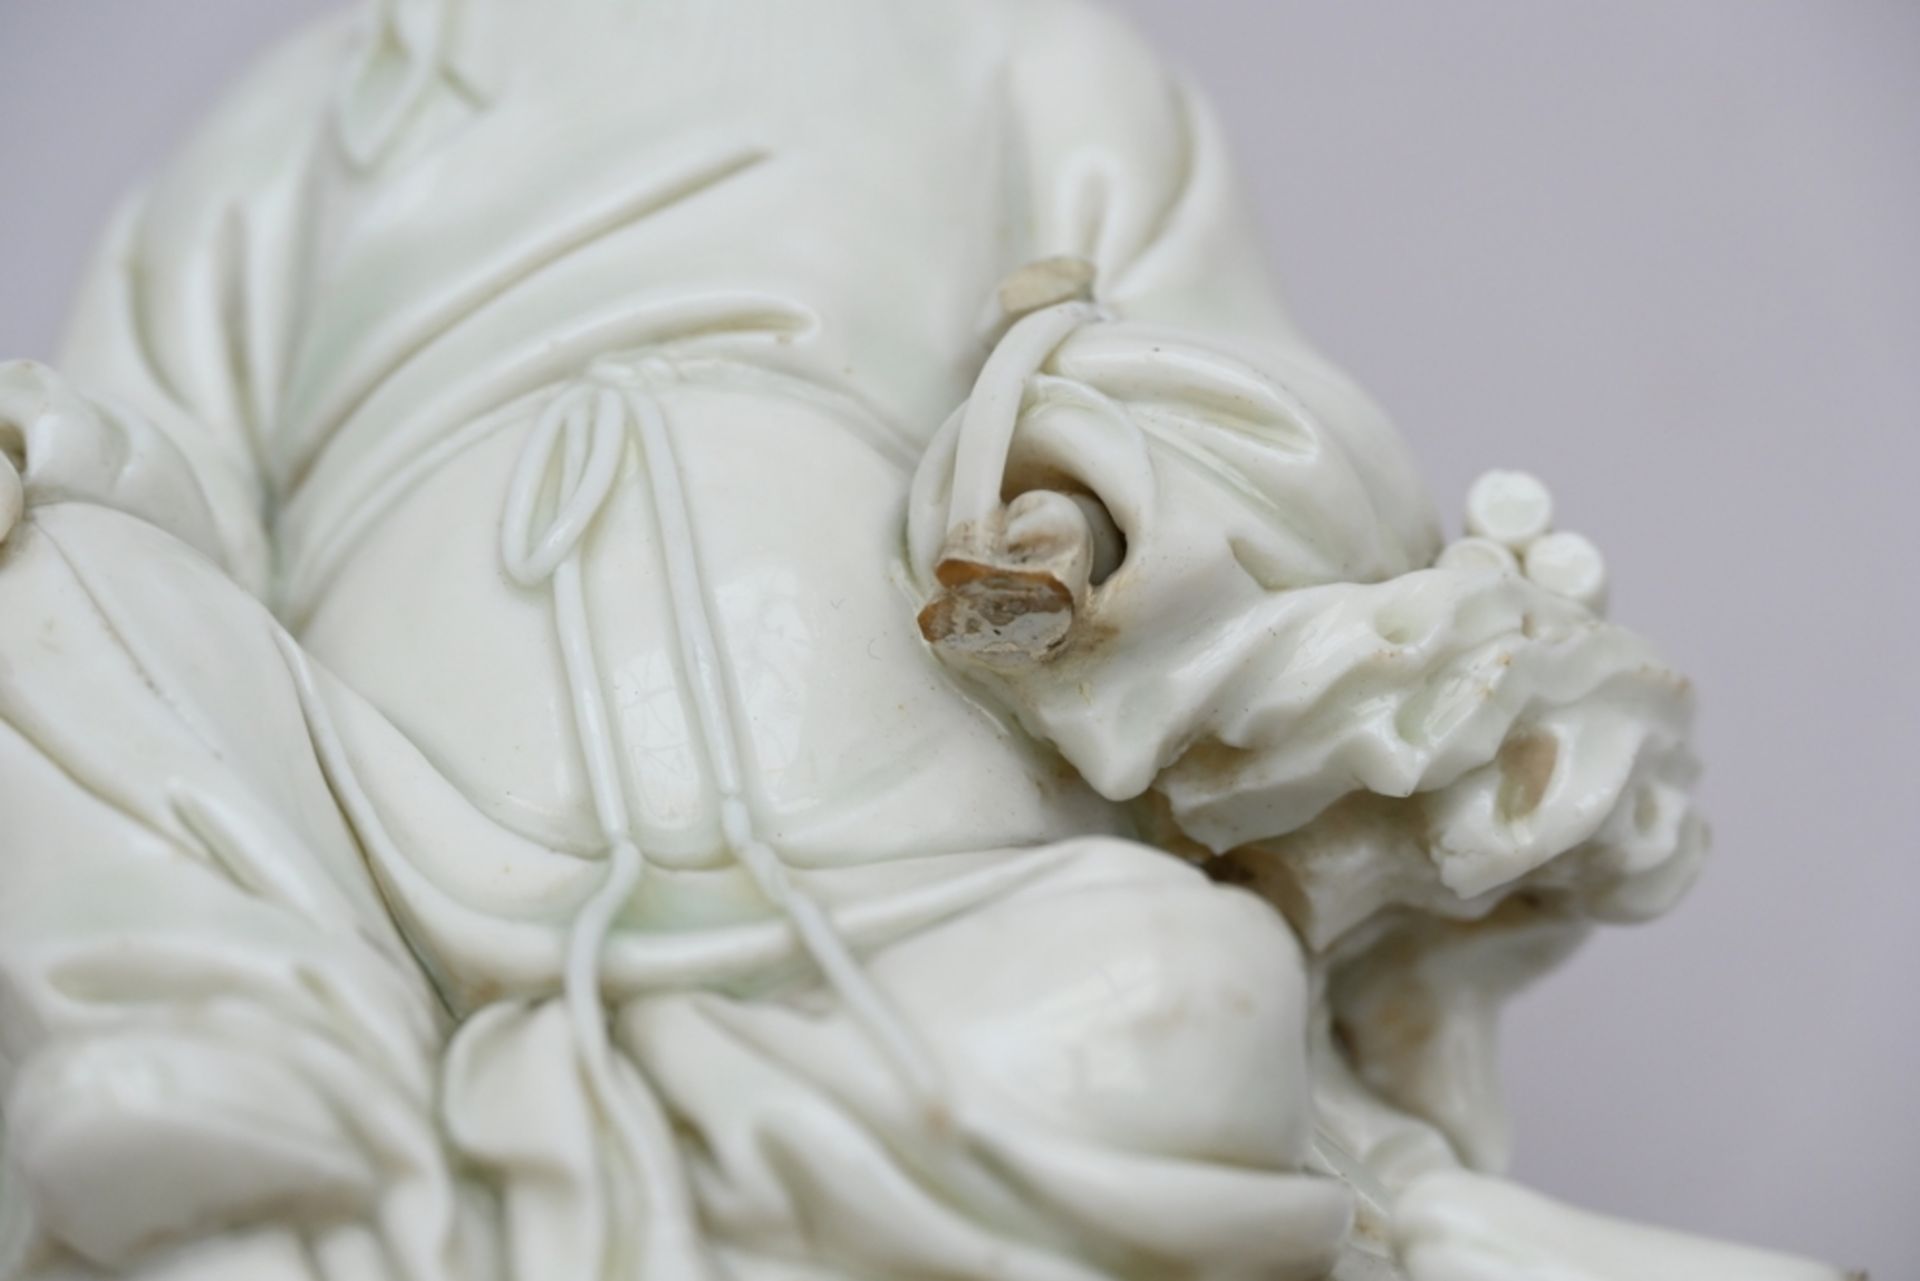 A blanc de chine sculpture 'Laotse', 18th century (h 20 cm) (*) - Bild 5 aus 6